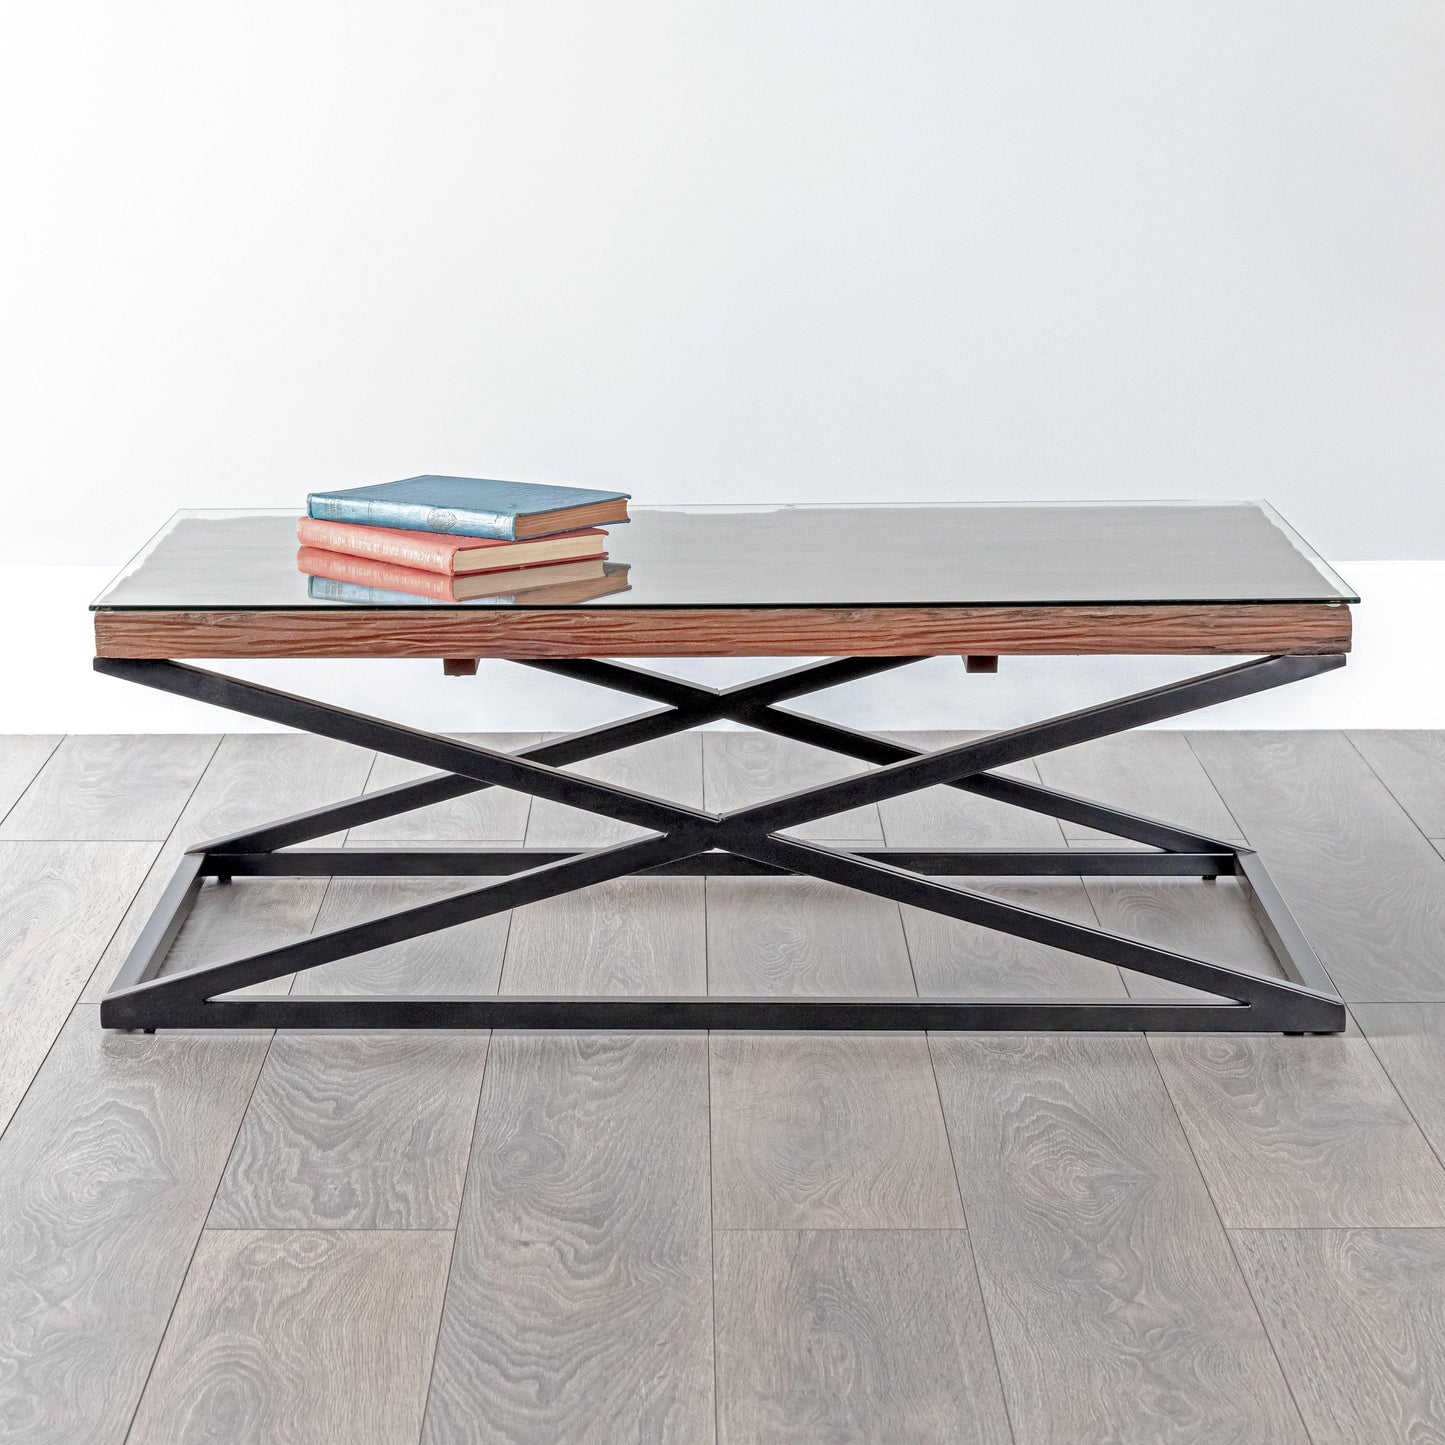 Furniture  -  Bella Wood Coffee Table  -  60004571